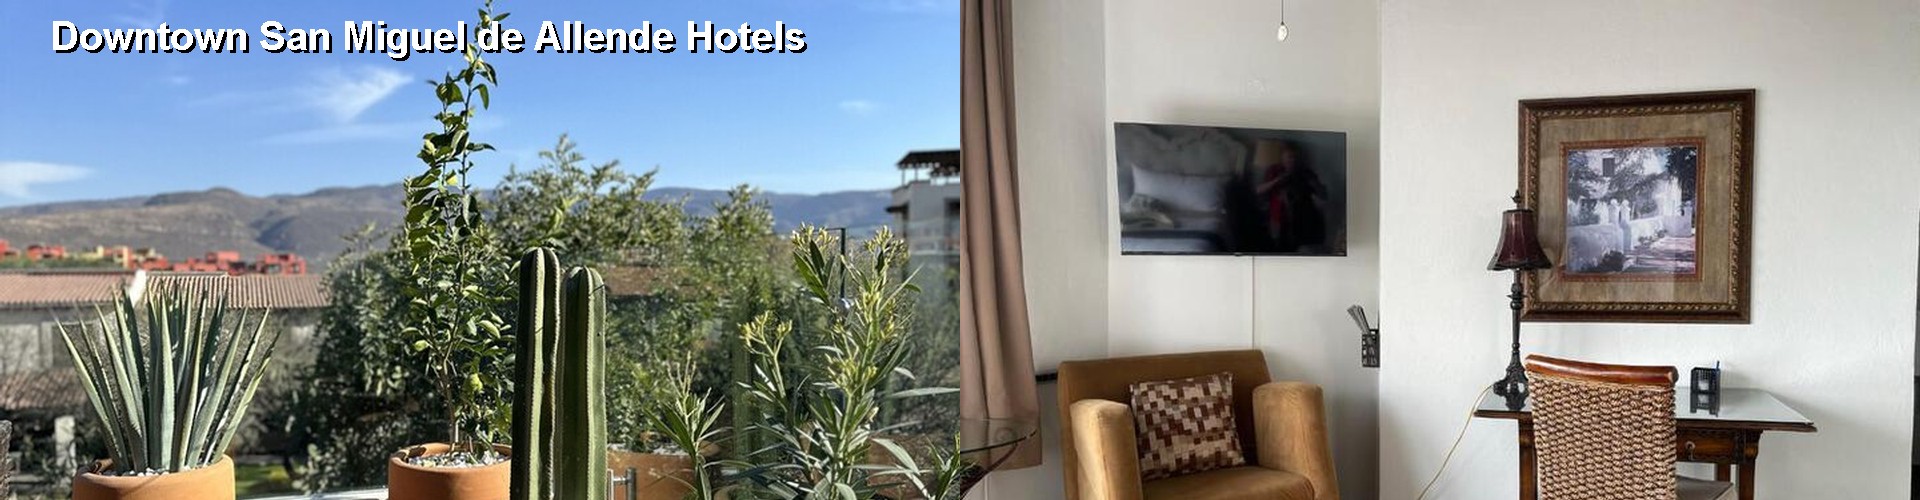 5 Best Hotels near Downtown San Miguel de Allende